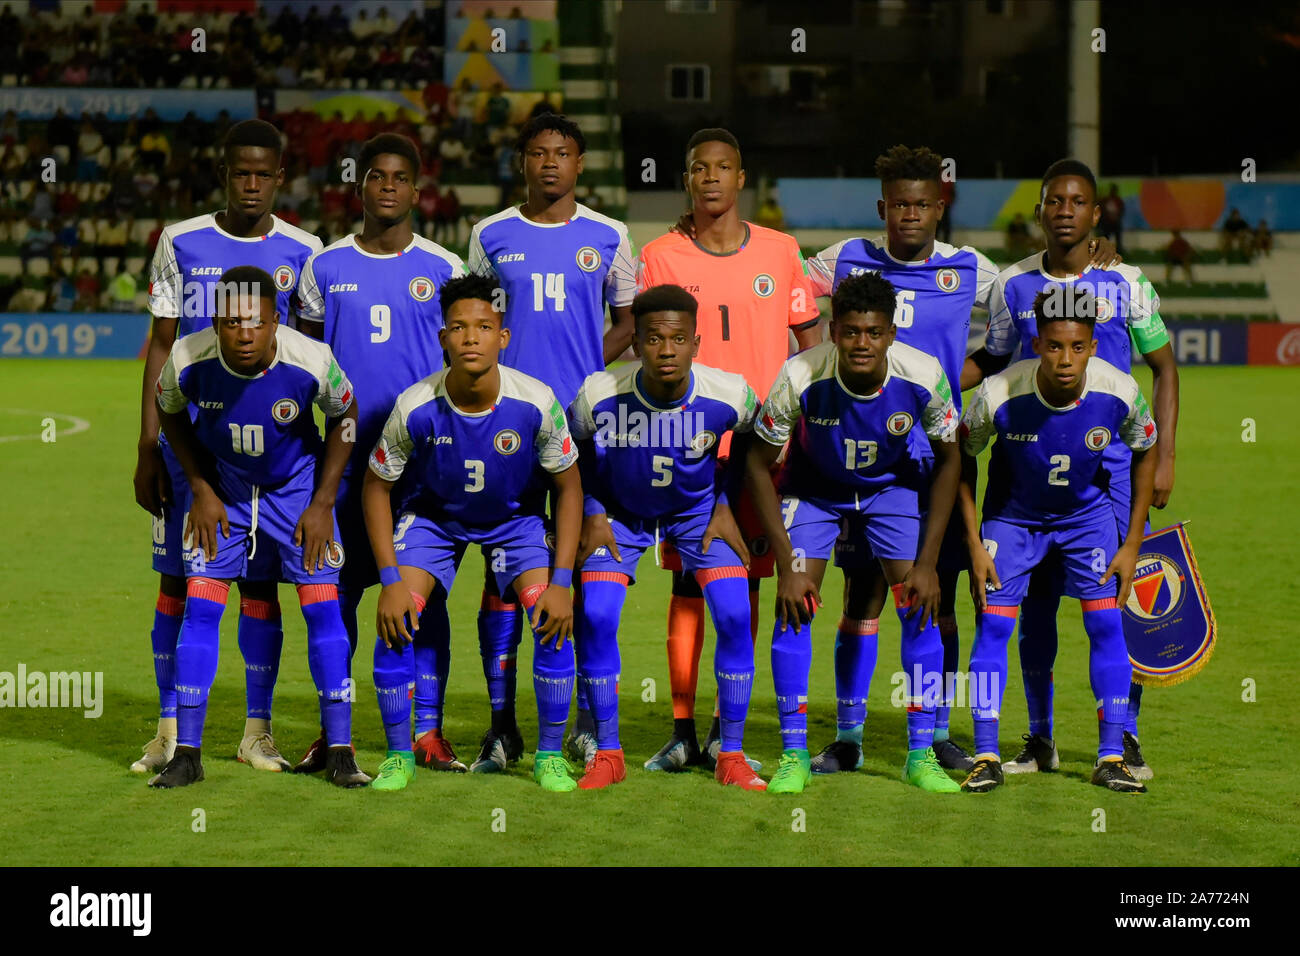 GOIÂNIA, GEHEN - 30.10.2019: SUB 17 CHILE E HAITI - Haiti Team während der U 17 Chile und Haiti. Gleiches gilt für die FIFA U 17 WM-Gruppenphase. Serrinha Stadion in Goiânia, gehen. (Foto: Reinaldo Reginato/Fotoarena) Stockfoto